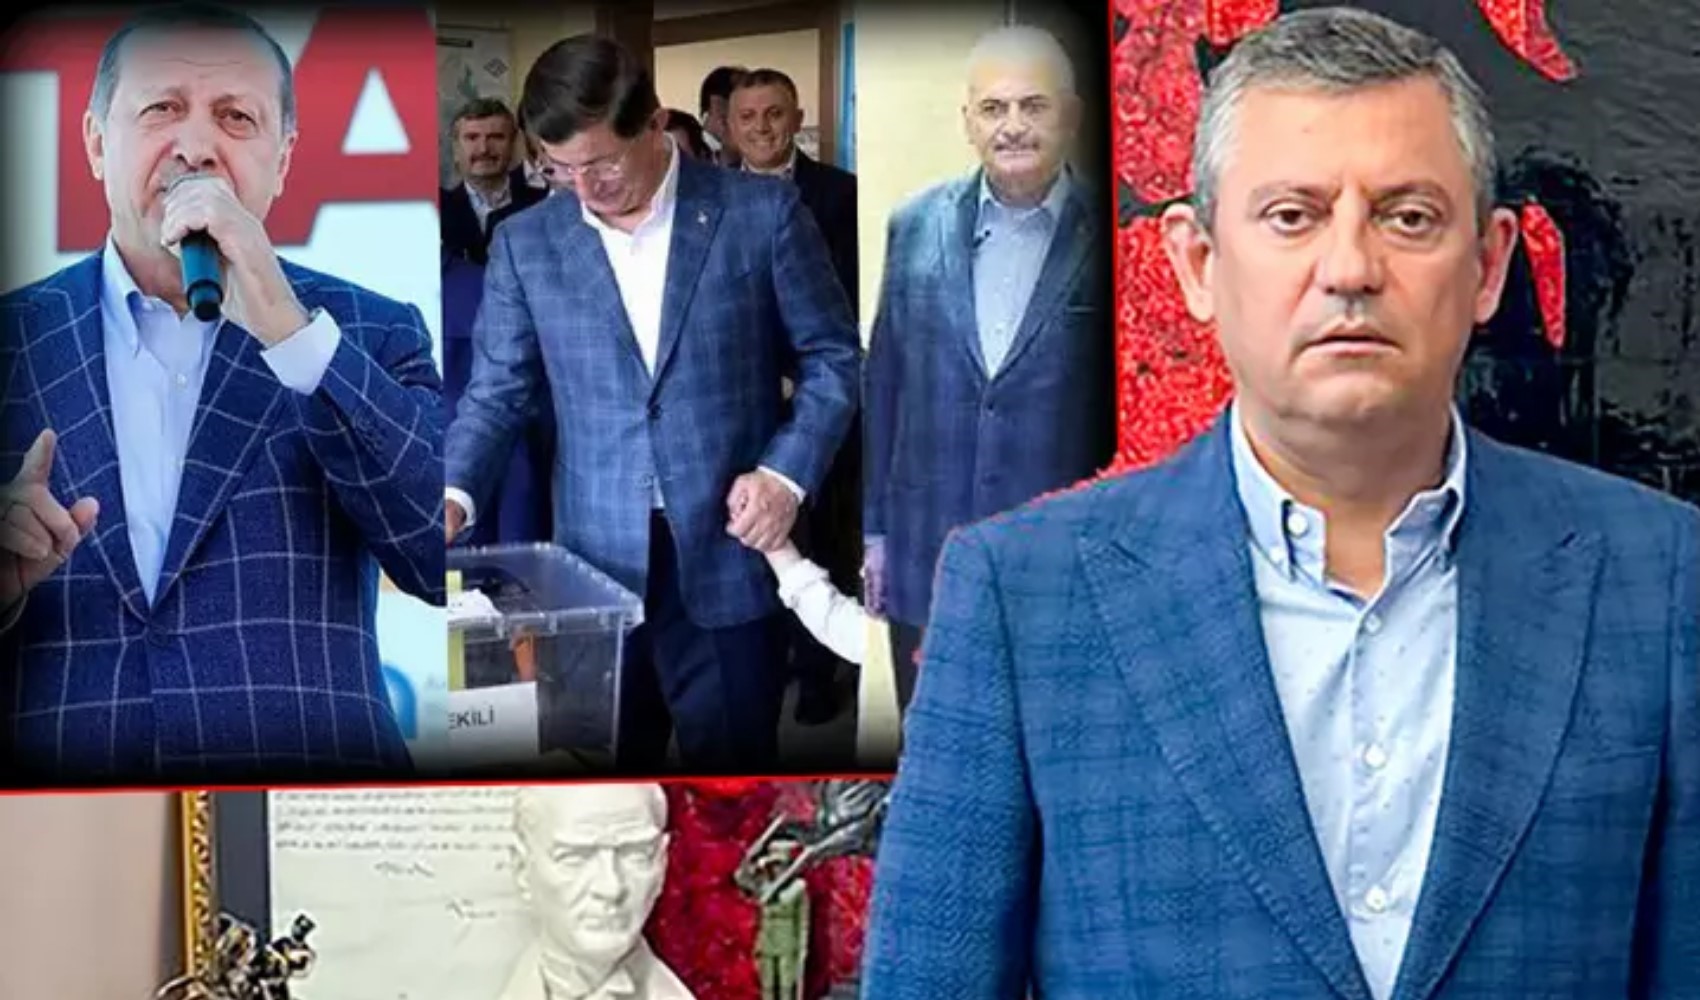 Eski Turizm Bakanı Bahattin Yücel, ekose etekli levrek manşetini hatırlattı: 'Türkiye'nin gündemi ceketle filan yönetilecek gibi değil. Erken seçim zaruri'